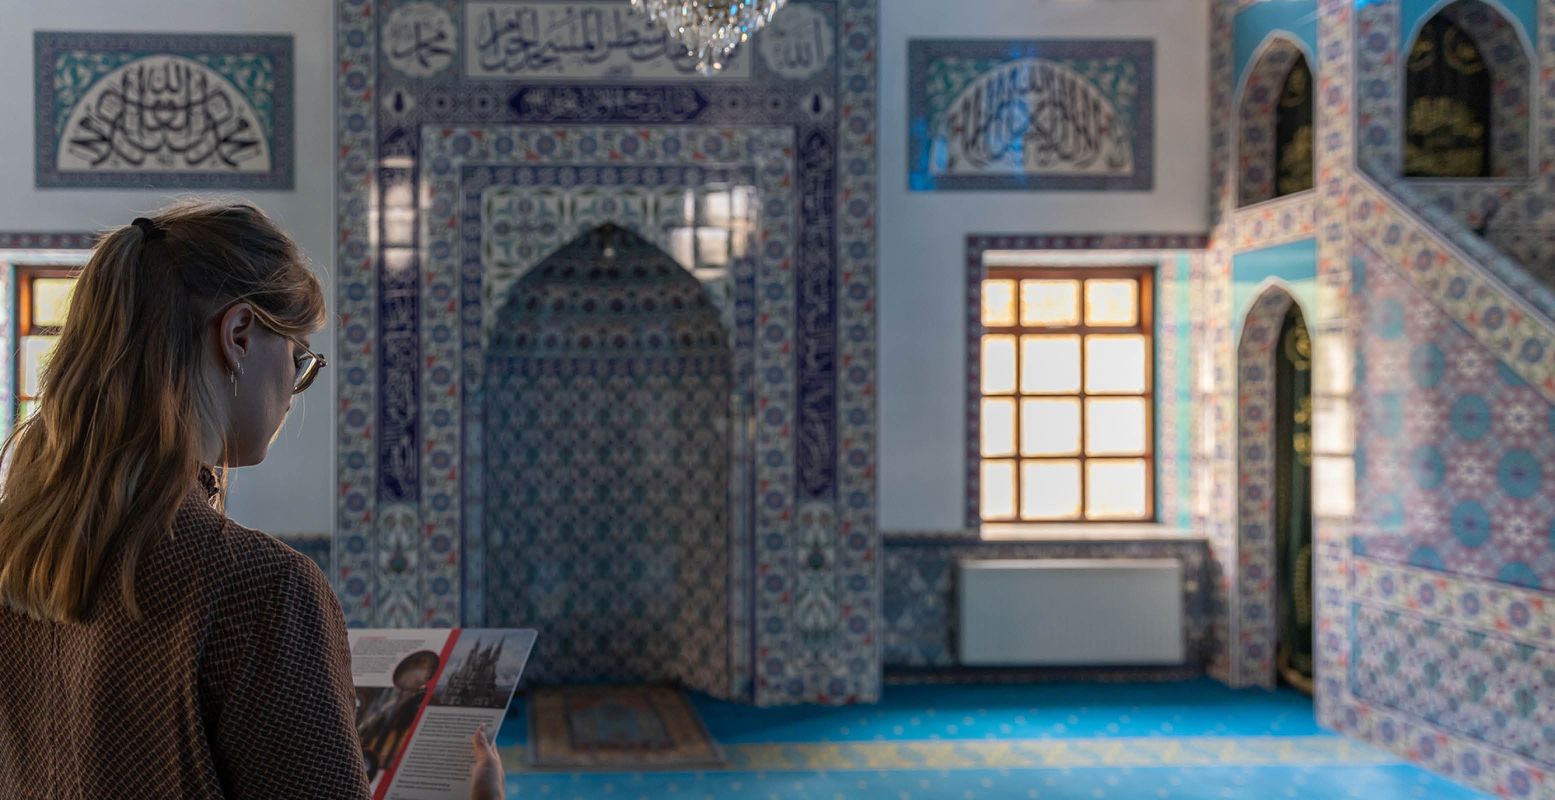 Pak een kijkkaart mee en bewonder de Yunus Emre Moskee in Almelo. Foto: Femke Lockefeer